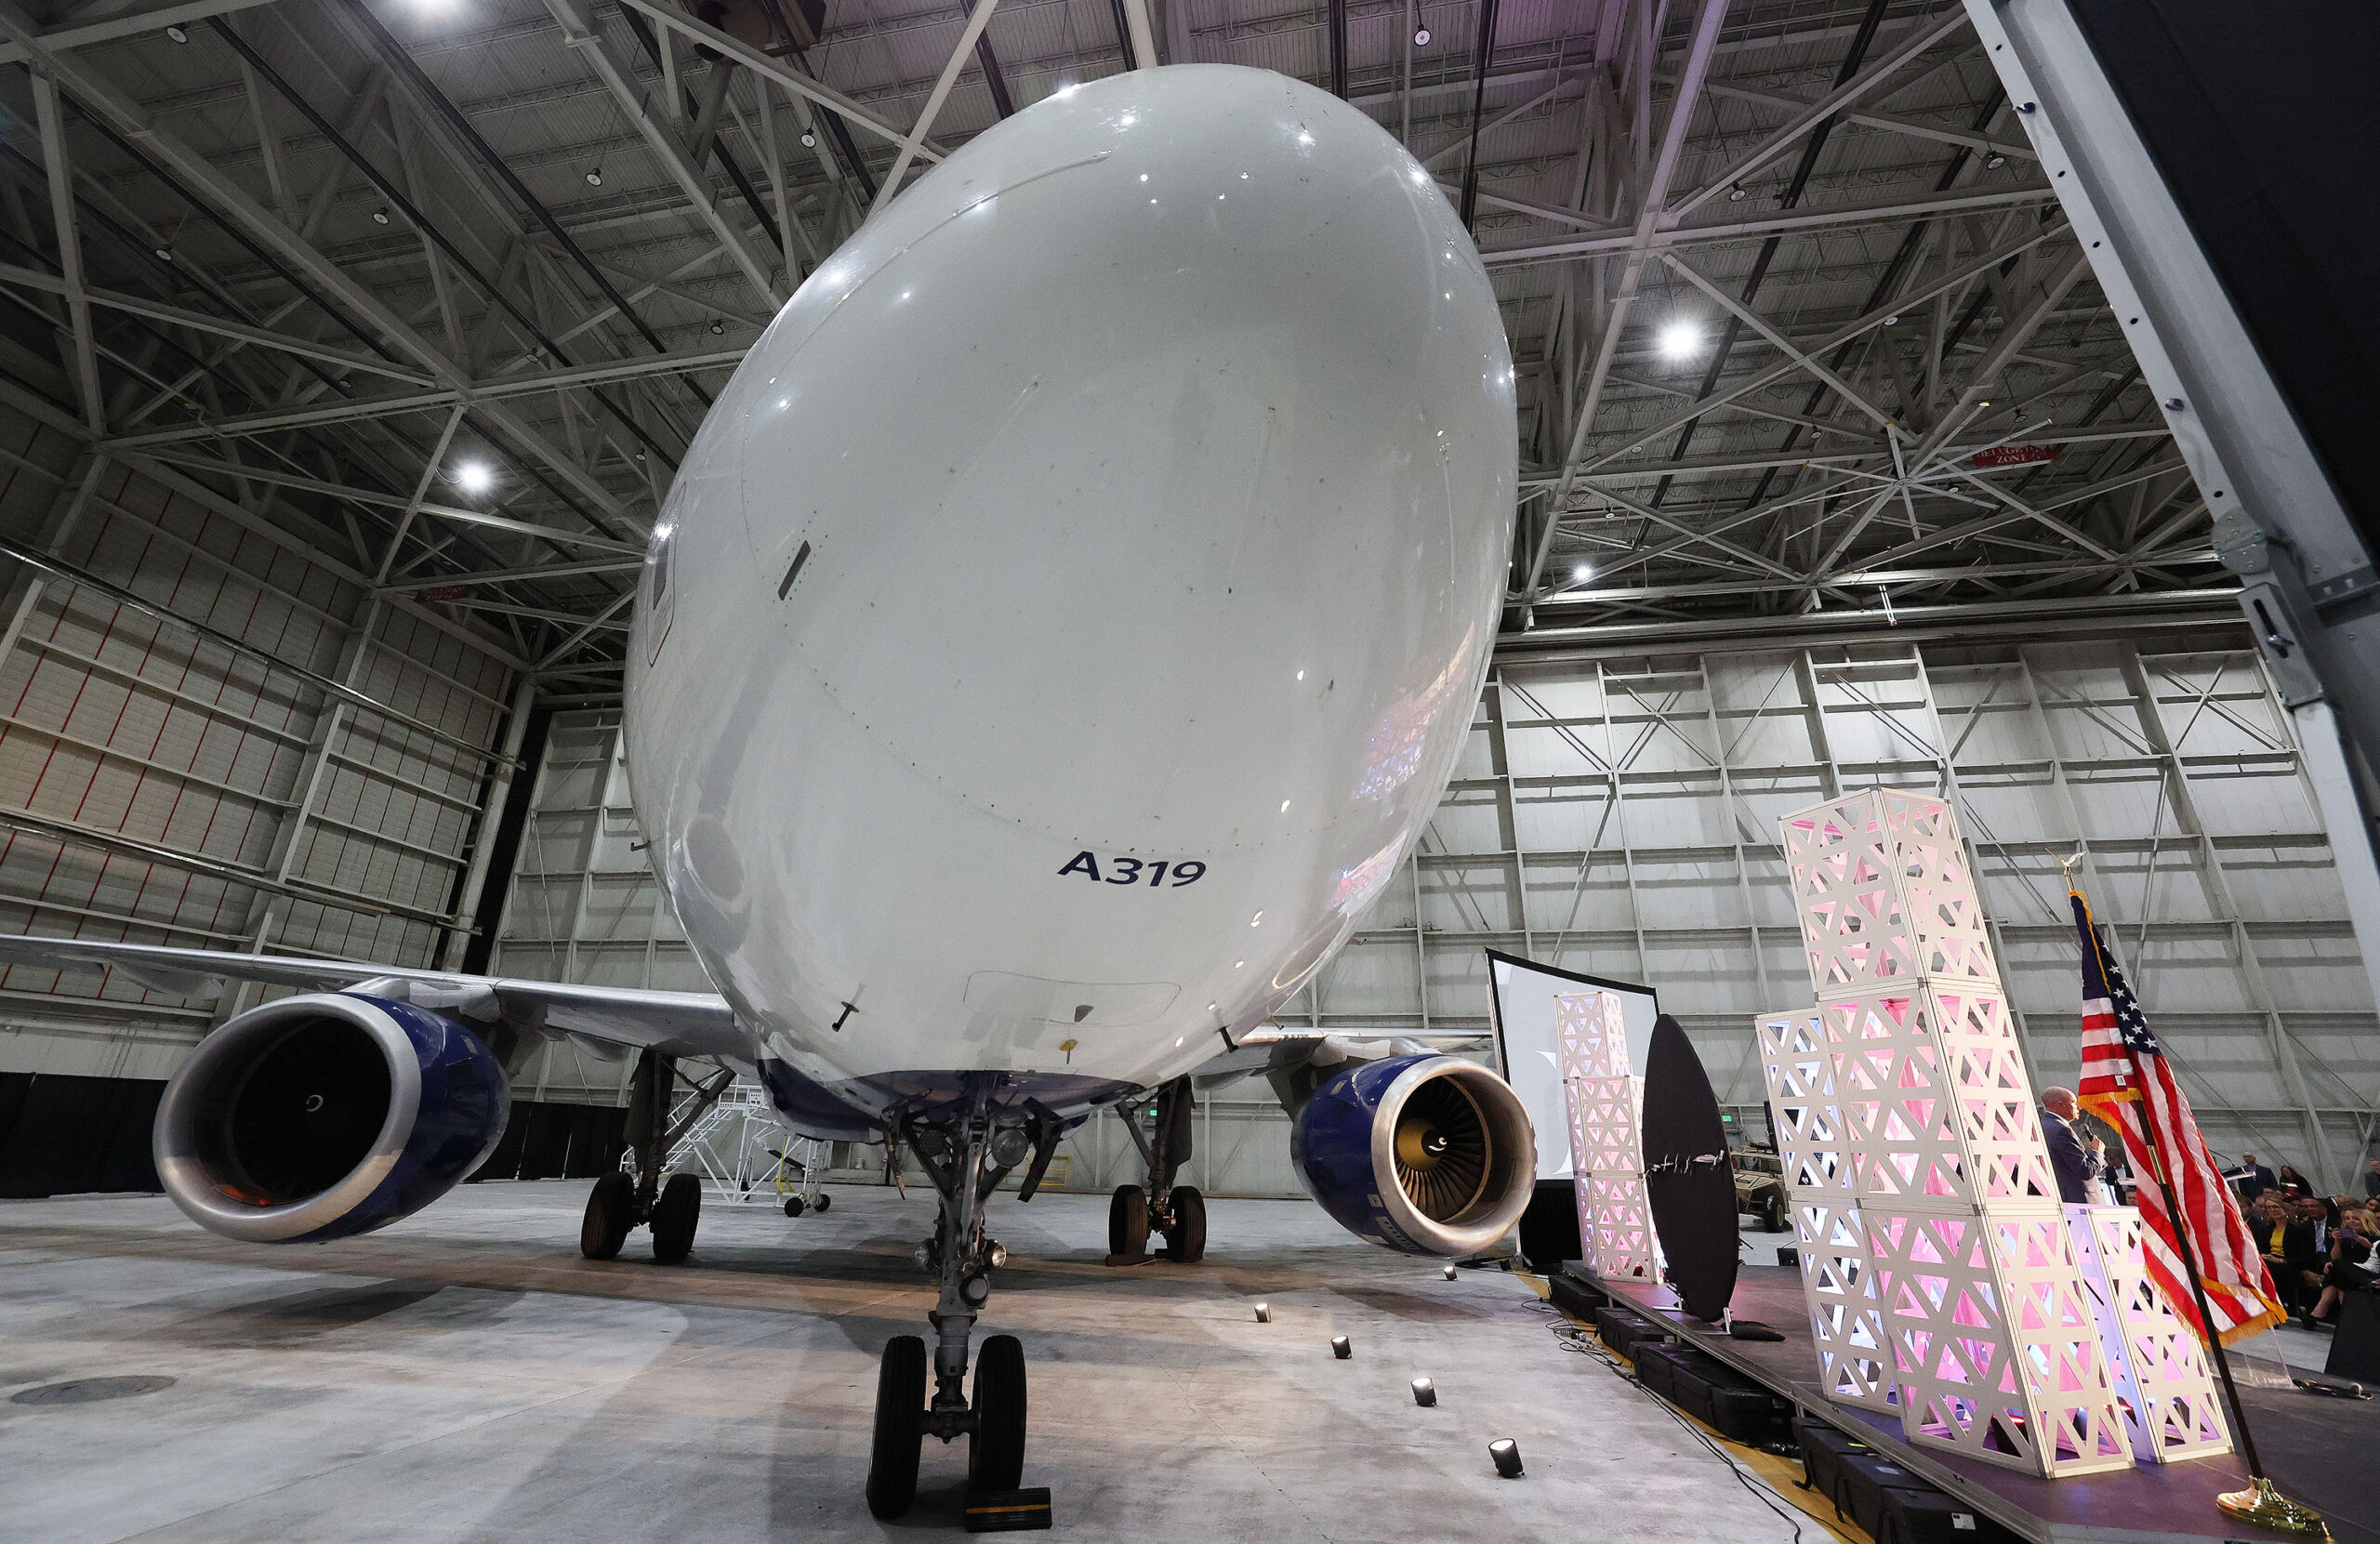 UADA's rebranding reinforces Utah's pioneering legacy in aerospace and defense.